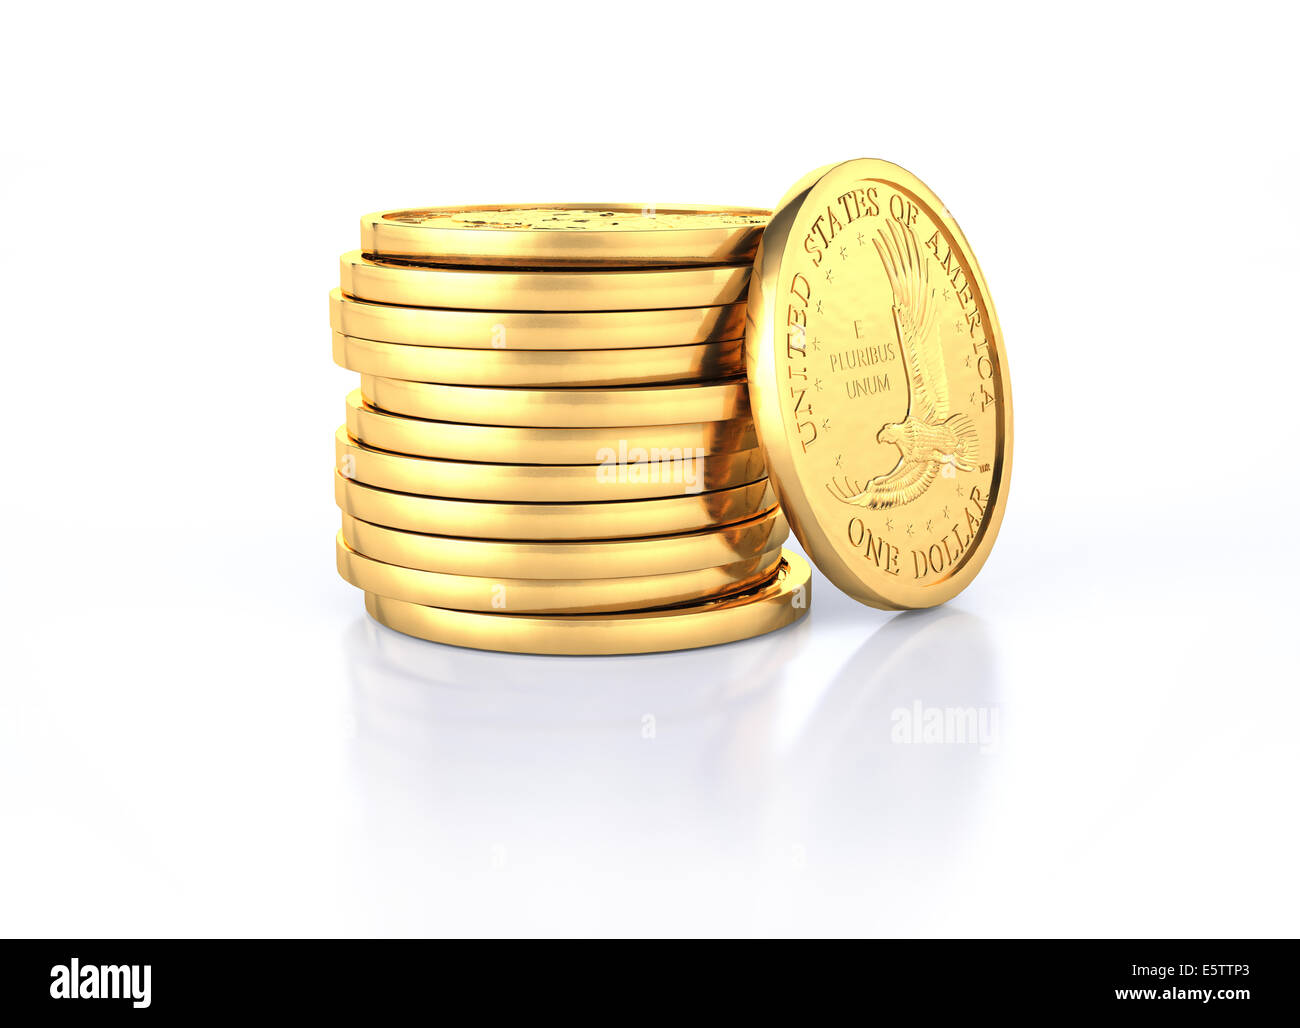 Gold-Dollar-Münzen-Stack und eine Münze Liegerad drauf. Auf einem weißen halb reflektierende Oberfläche und weißen Hintergrund. Stockfoto